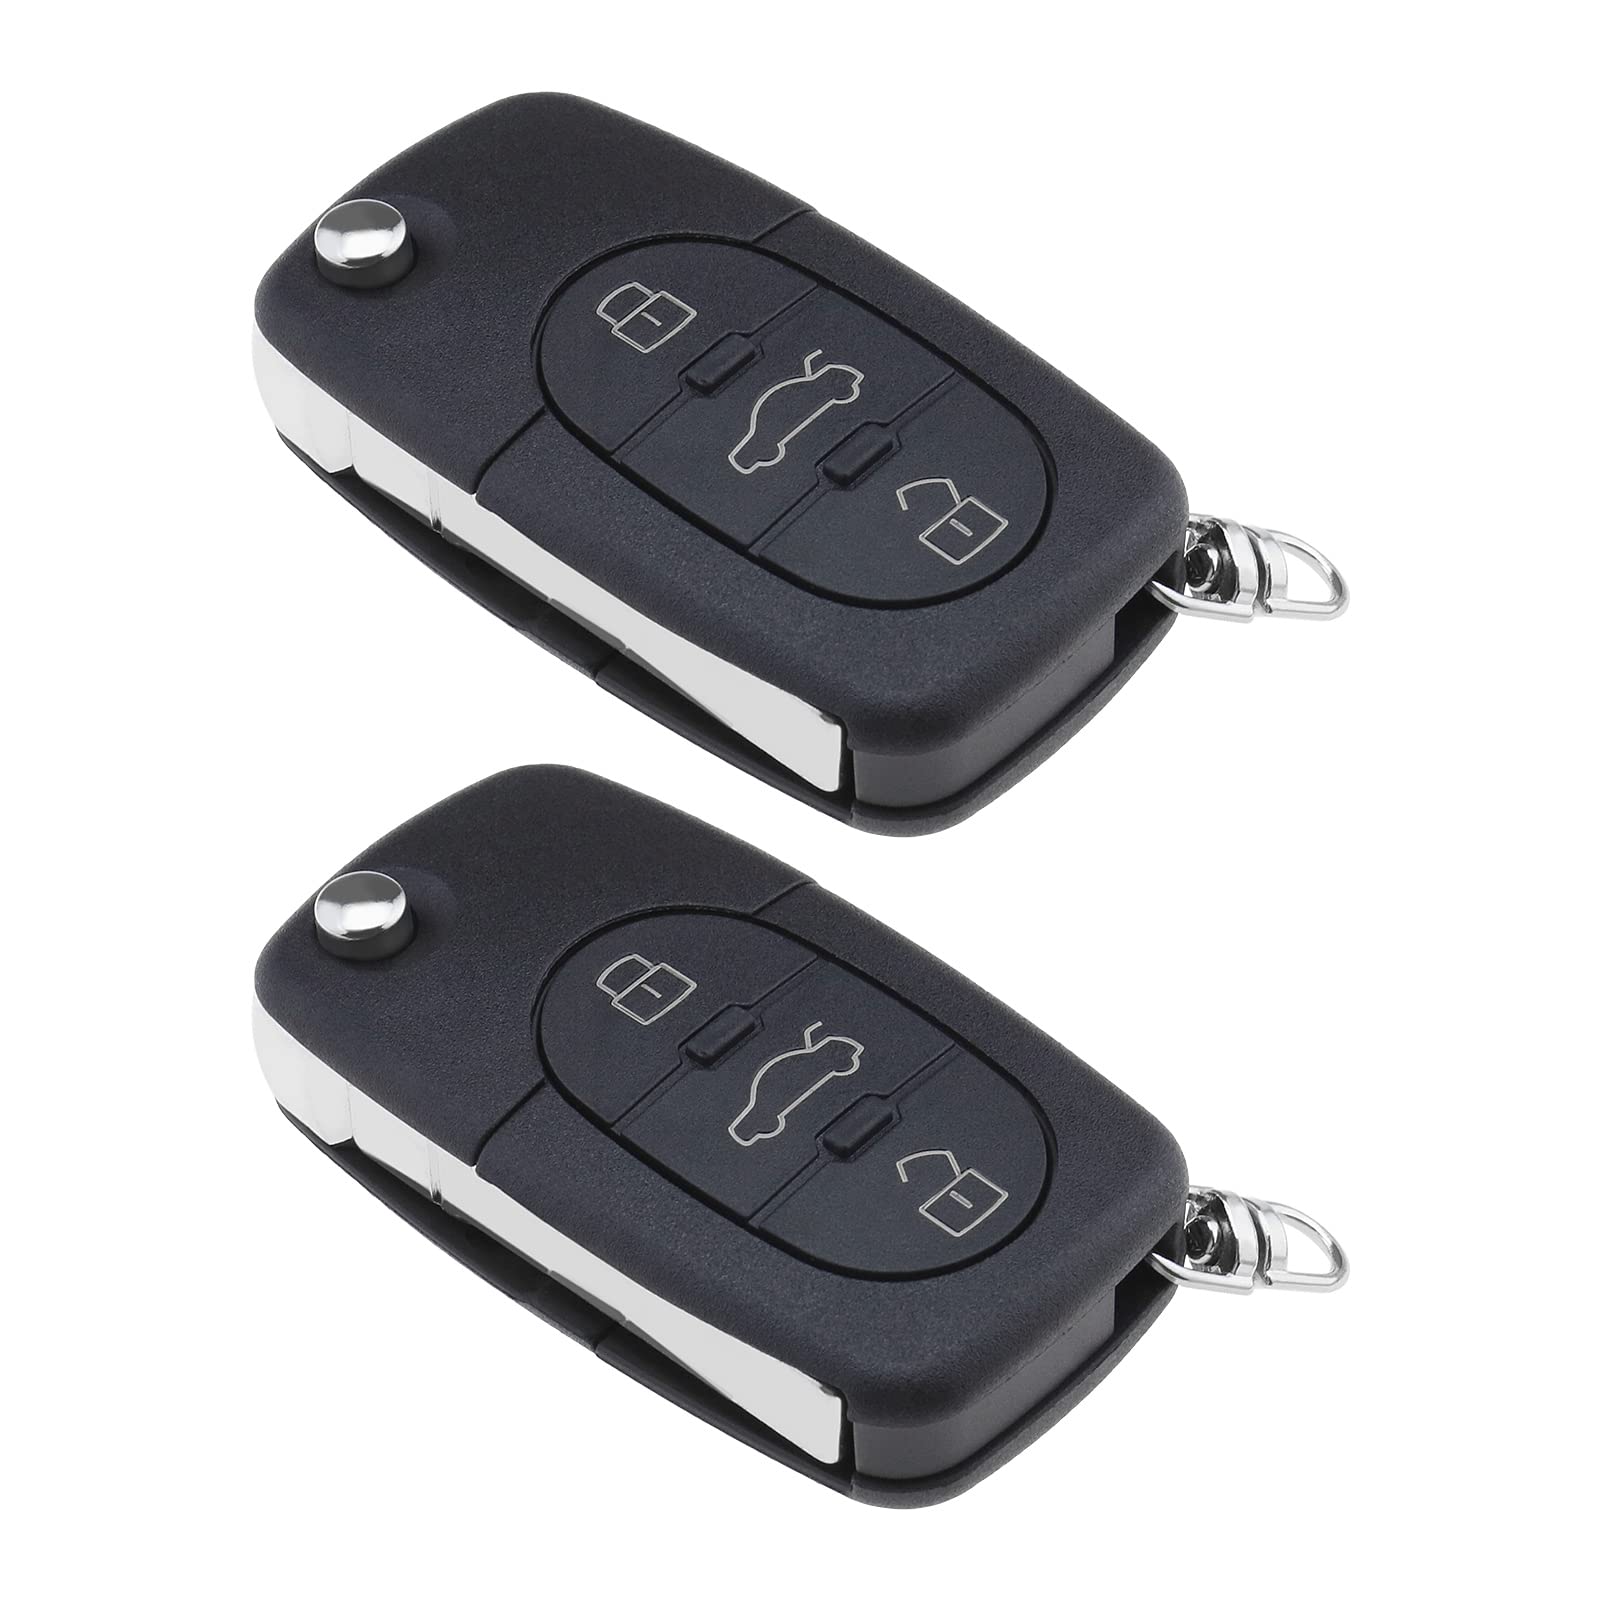 2 x Schlüsselgehäuse mit 3 Tasten, Ersatz für Audi A2 A3 A4 A6 A8 TT 3 Tasten Auto Schlüsselanhänger Zubehör Zubehör Auto schwarz von ECSiNG